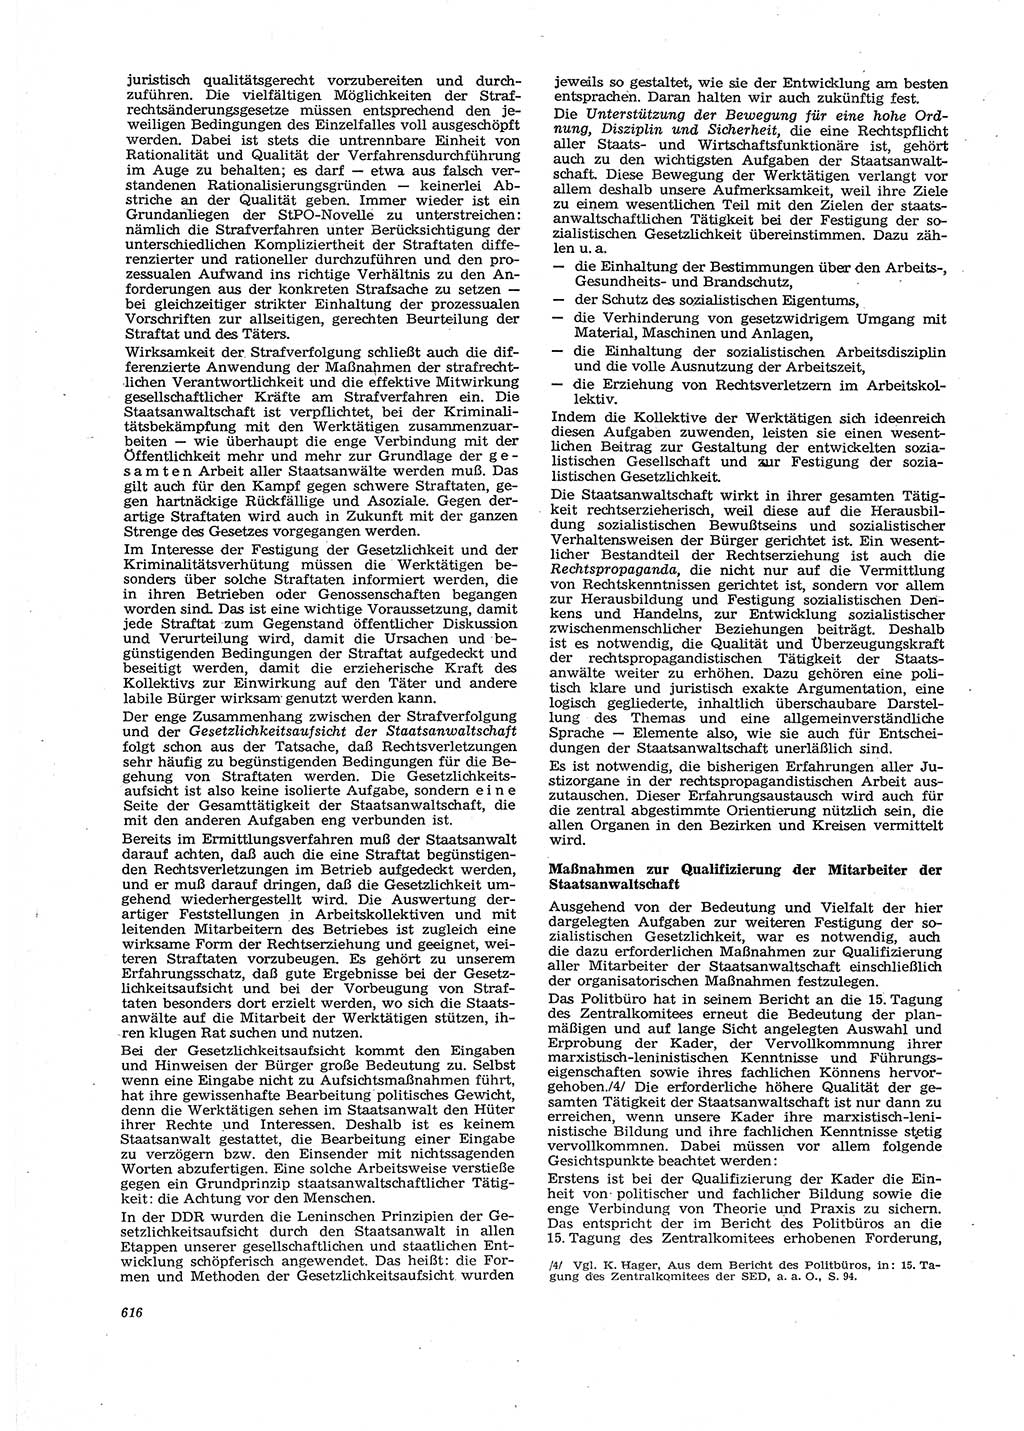 Neue Justiz (NJ), Zeitschrift für Recht und Rechtswissenschaft [Deutsche Demokratische Republik (DDR)], 29. Jahrgang 1975, Seite 616 (NJ DDR 1975, S. 616)